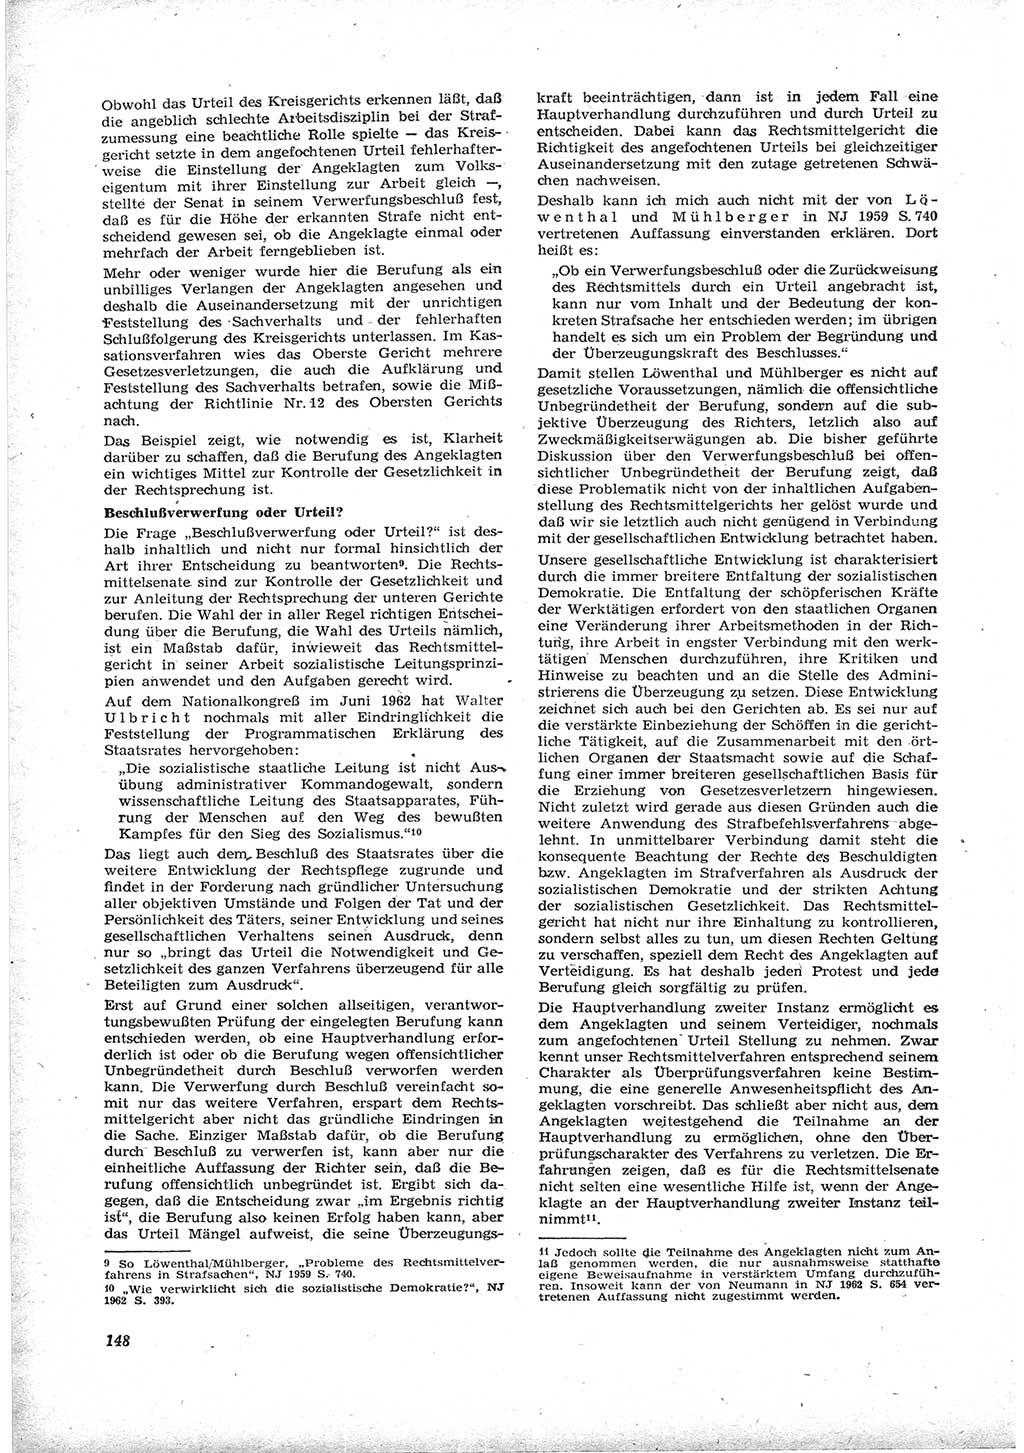 Neue Justiz (NJ), Zeitschrift für Recht und Rechtswissenschaft [Deutsche Demokratische Republik (DDR)], 17. Jahrgang 1963, Seite 148 (NJ DDR 1963, S. 148)